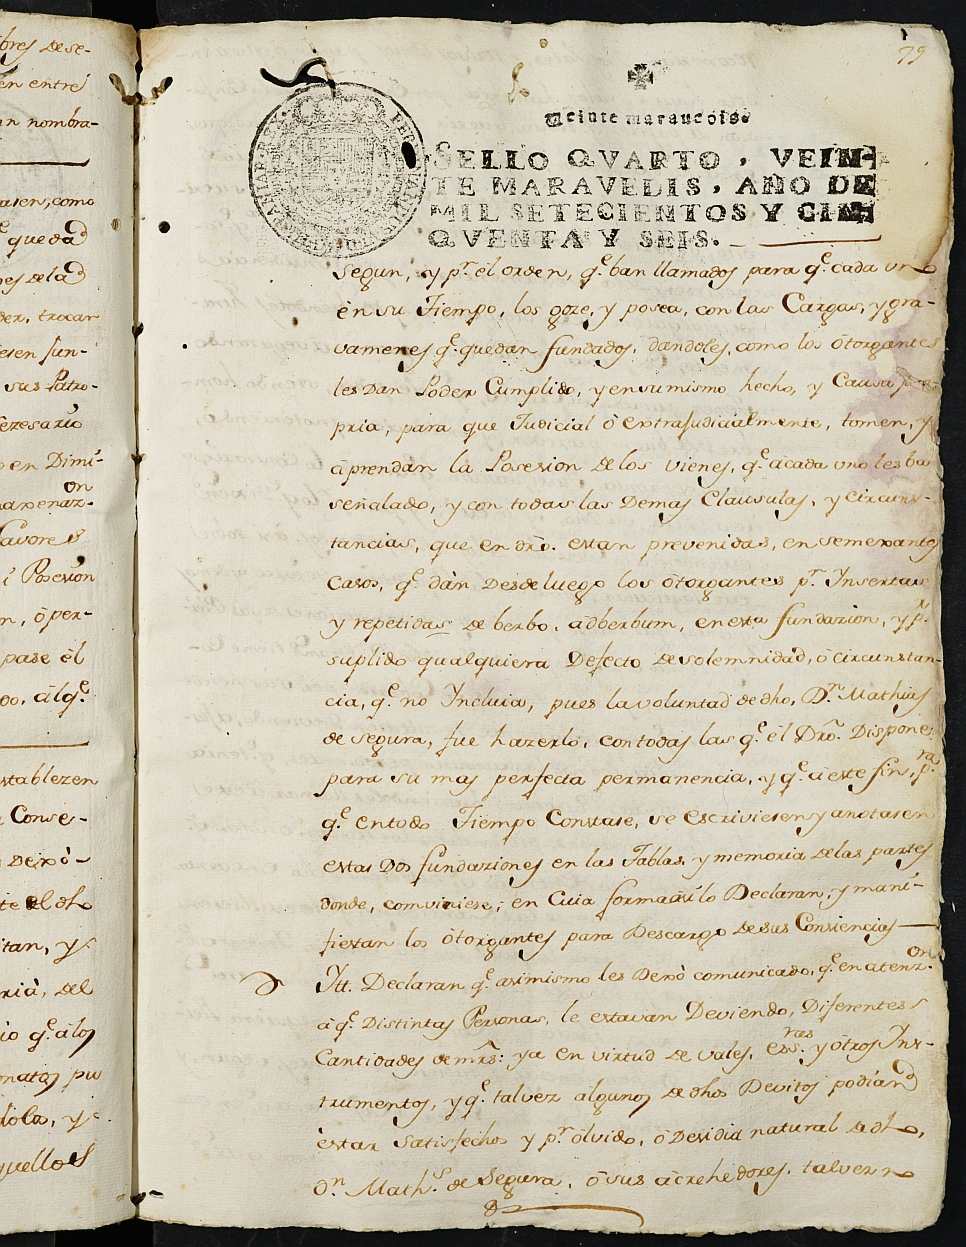 Registro de Fernando Jiménez de Pineda, Cartagena: Escribano de Marina. Años 1756-1758.